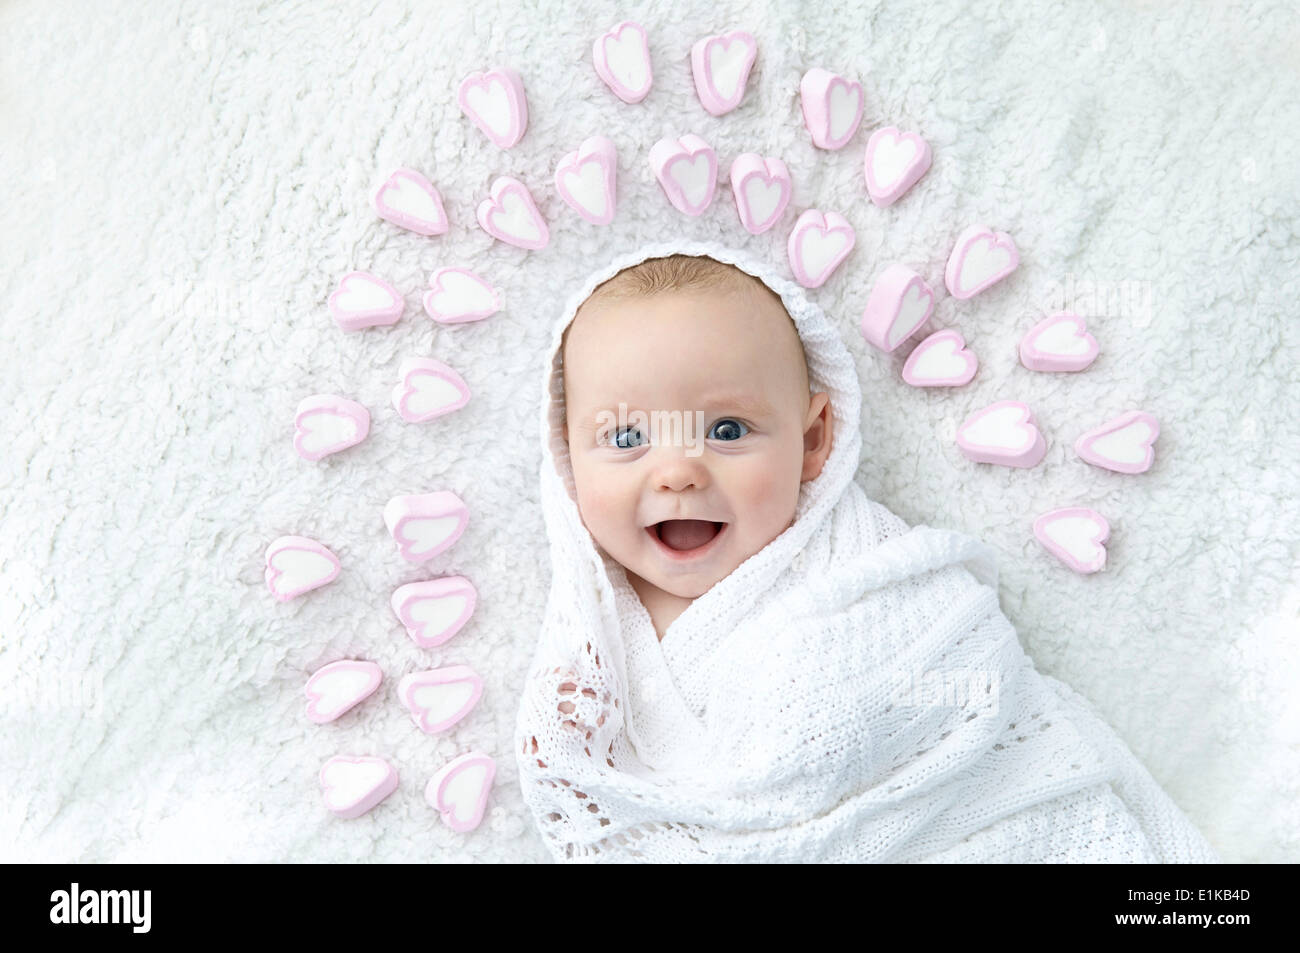 Publicado modelo Baby Boy envuelto en Manta, con formas de corazón alrededor de su cabeza. Foto de stock